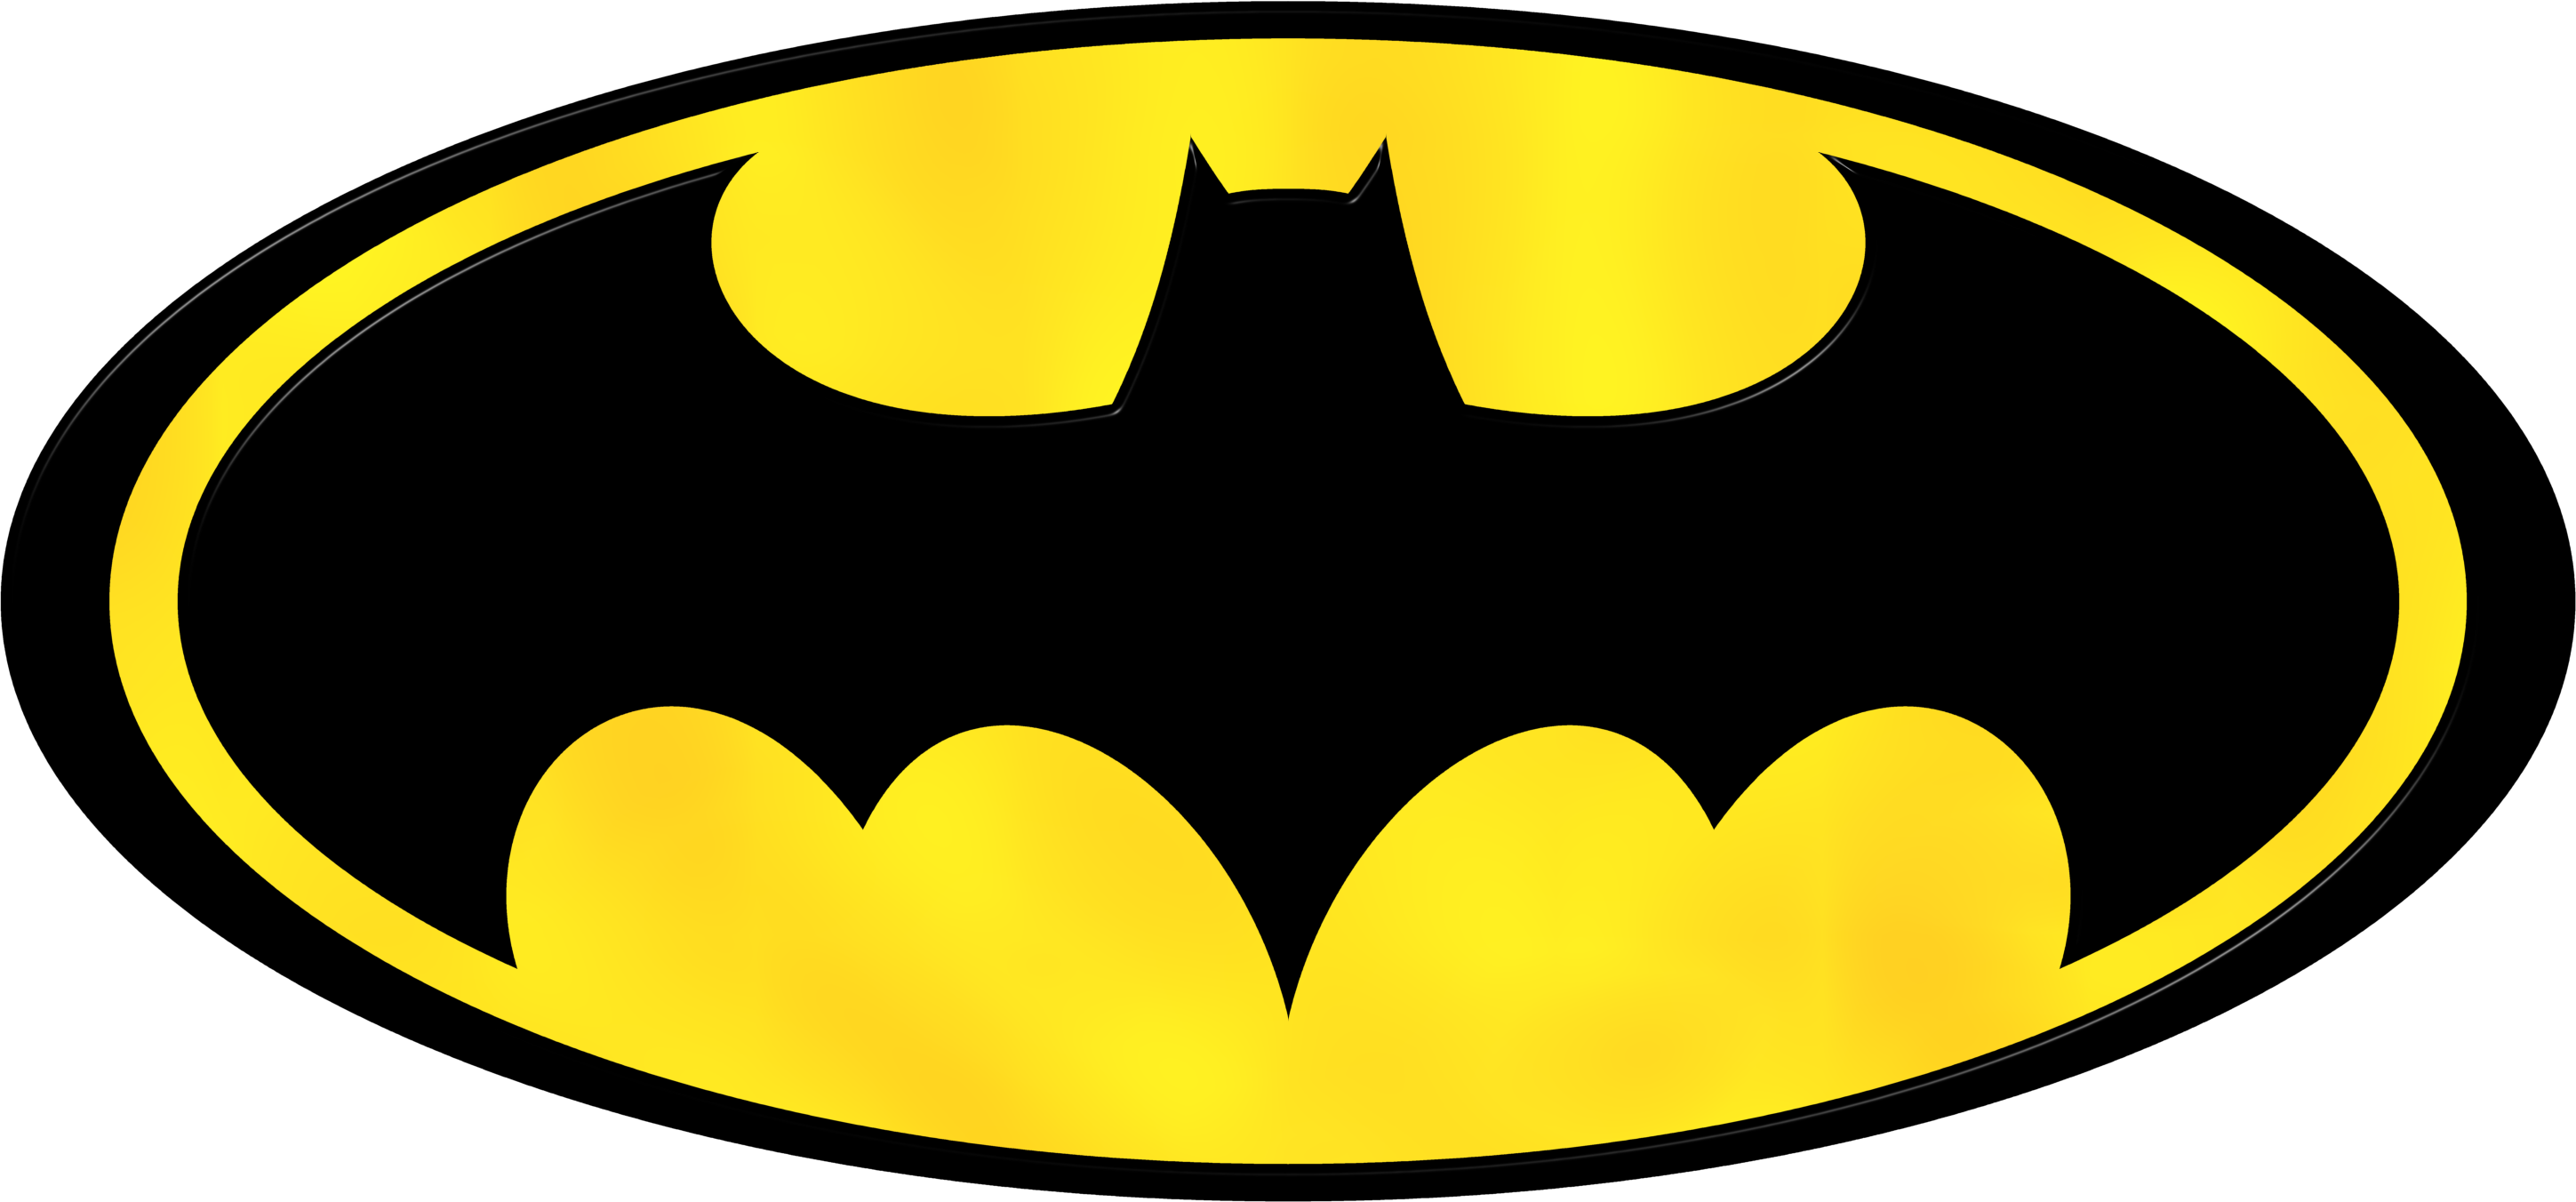 Escudo De Batman | Free Download Clip Art | Free Clip Art | on ...